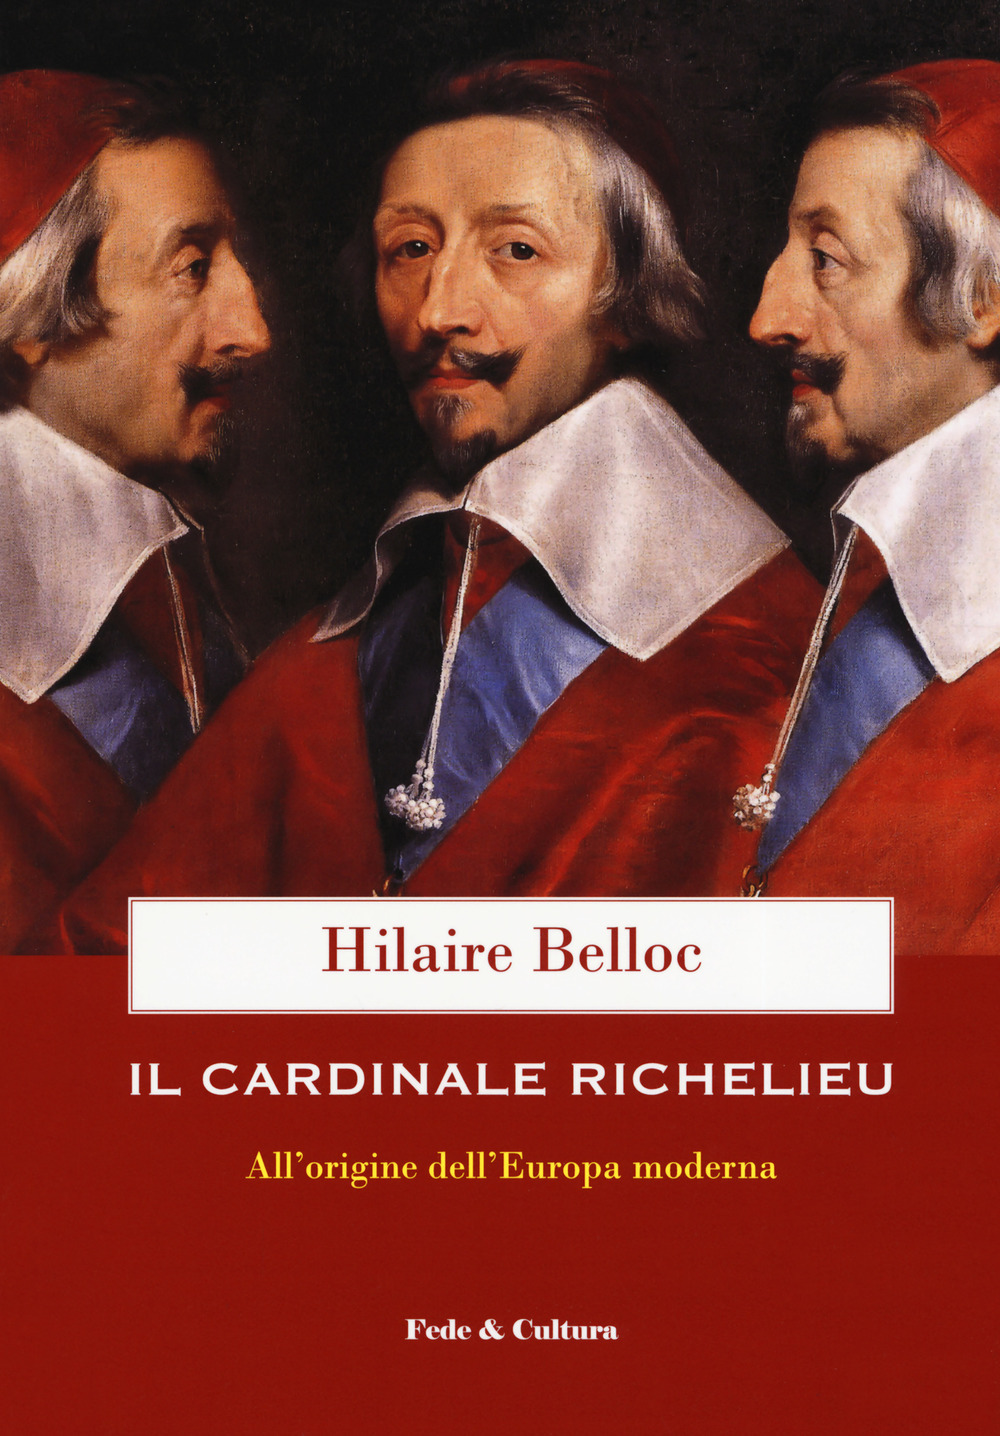 Il cardinale Richelieu. All'origine dell'Europa moderna